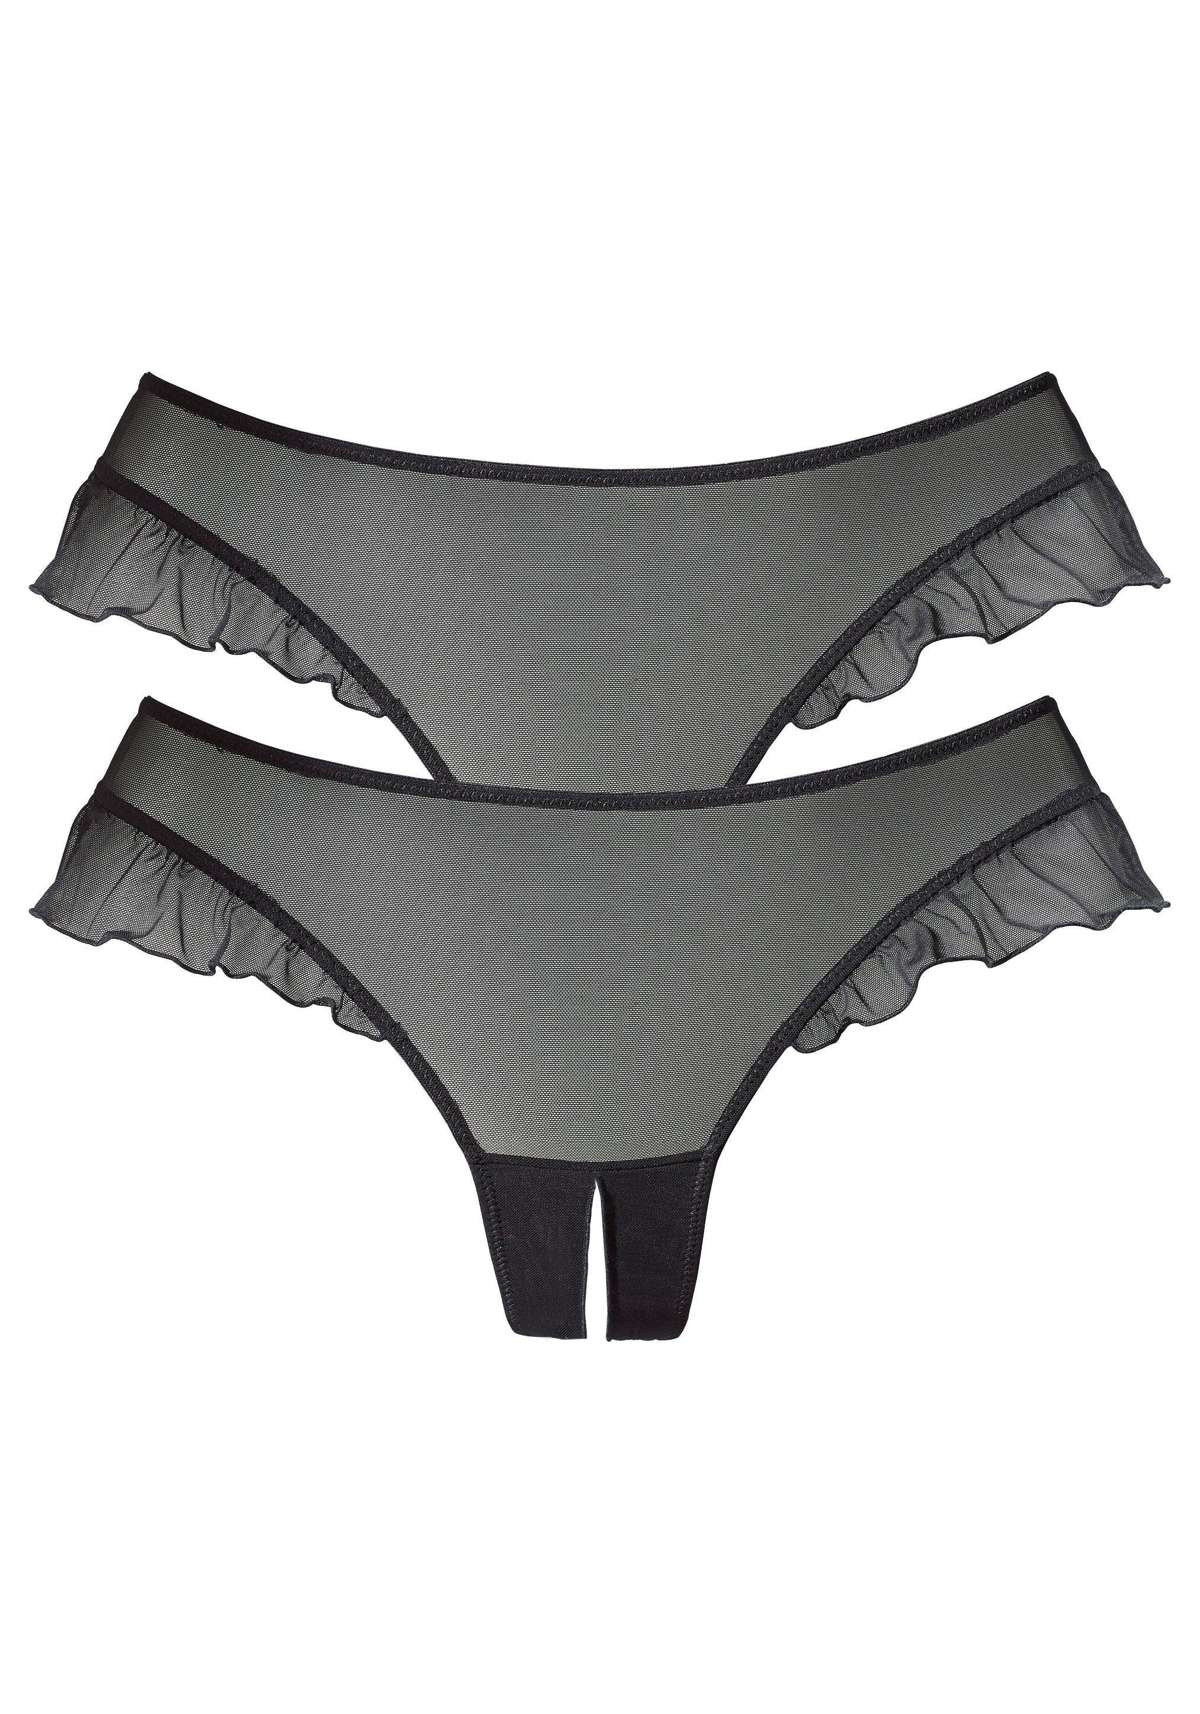 Открытая юбка-стринг (2 шт.), с романтическими рюшами на вырезе штанины.